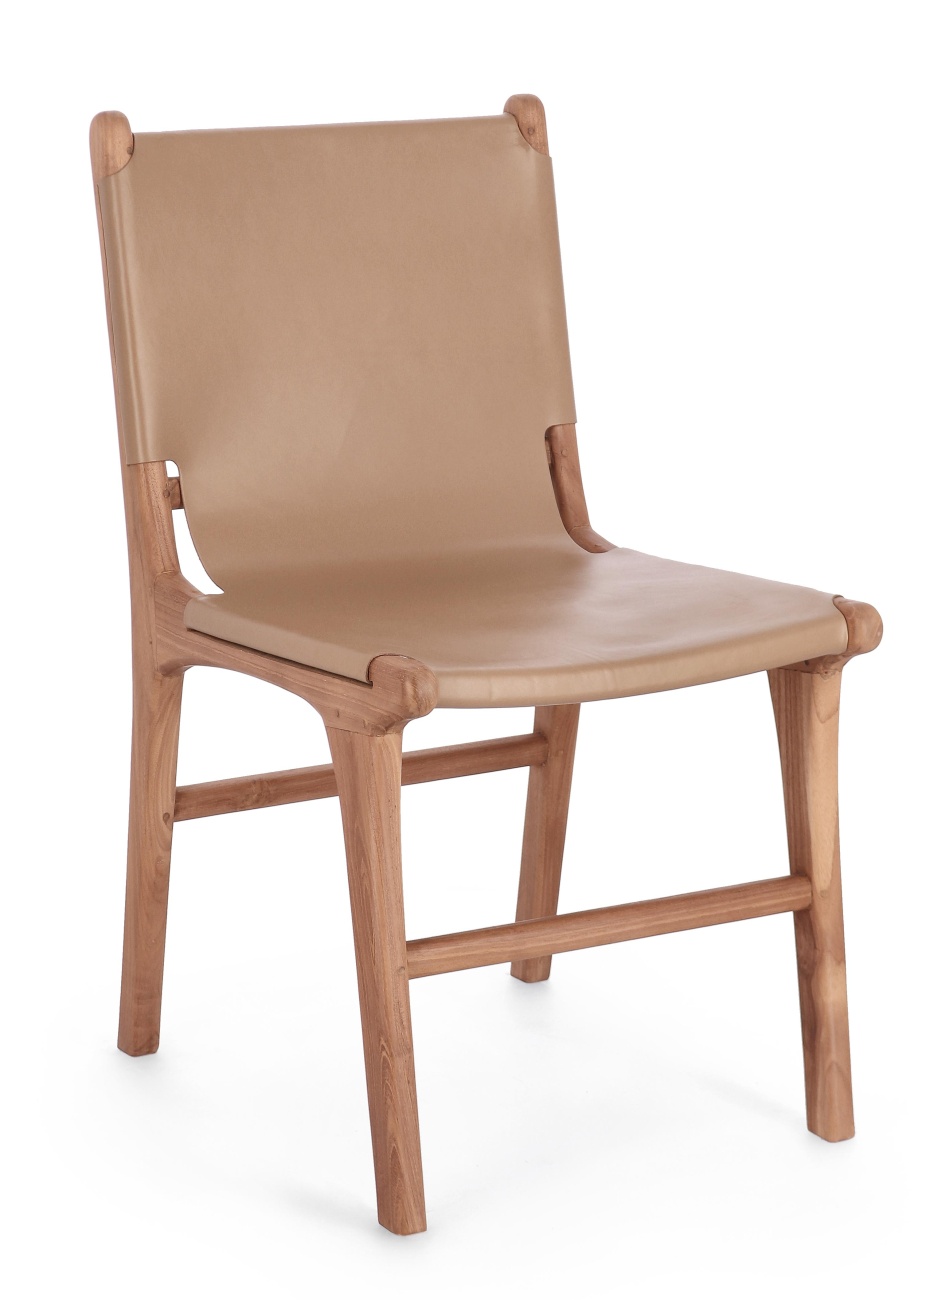 Der Esszimmerstuhl Eugenie überzeugt mit seinem modernen Stil. Gefertigt wurde er aus Leder, welches einen Taupe Farbton besitzt. Das Gestell ist aus Teakholz und hat eine natürliche Farbe. Der Stuhl besitzt eine Sitzhöhe von 45 cm.